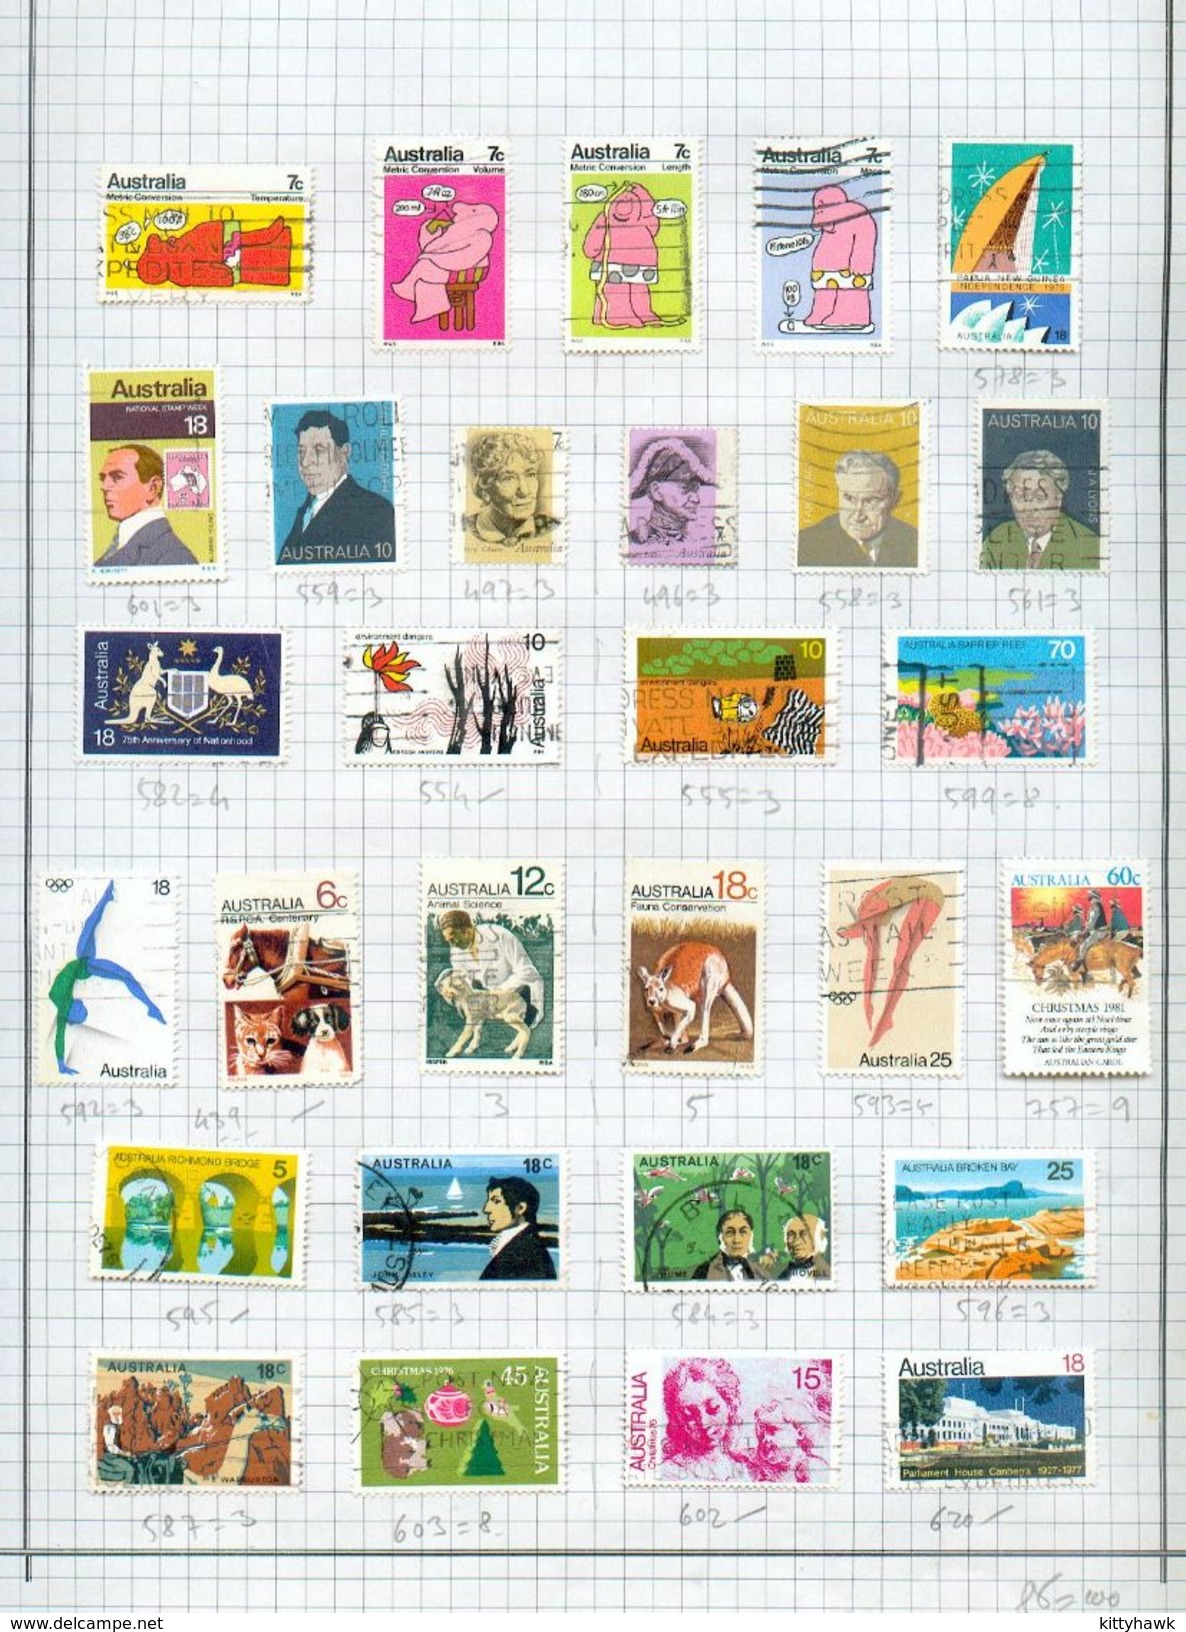 AUSTRALIE - petite collection oblitérée de plus de 450 timbres - BE